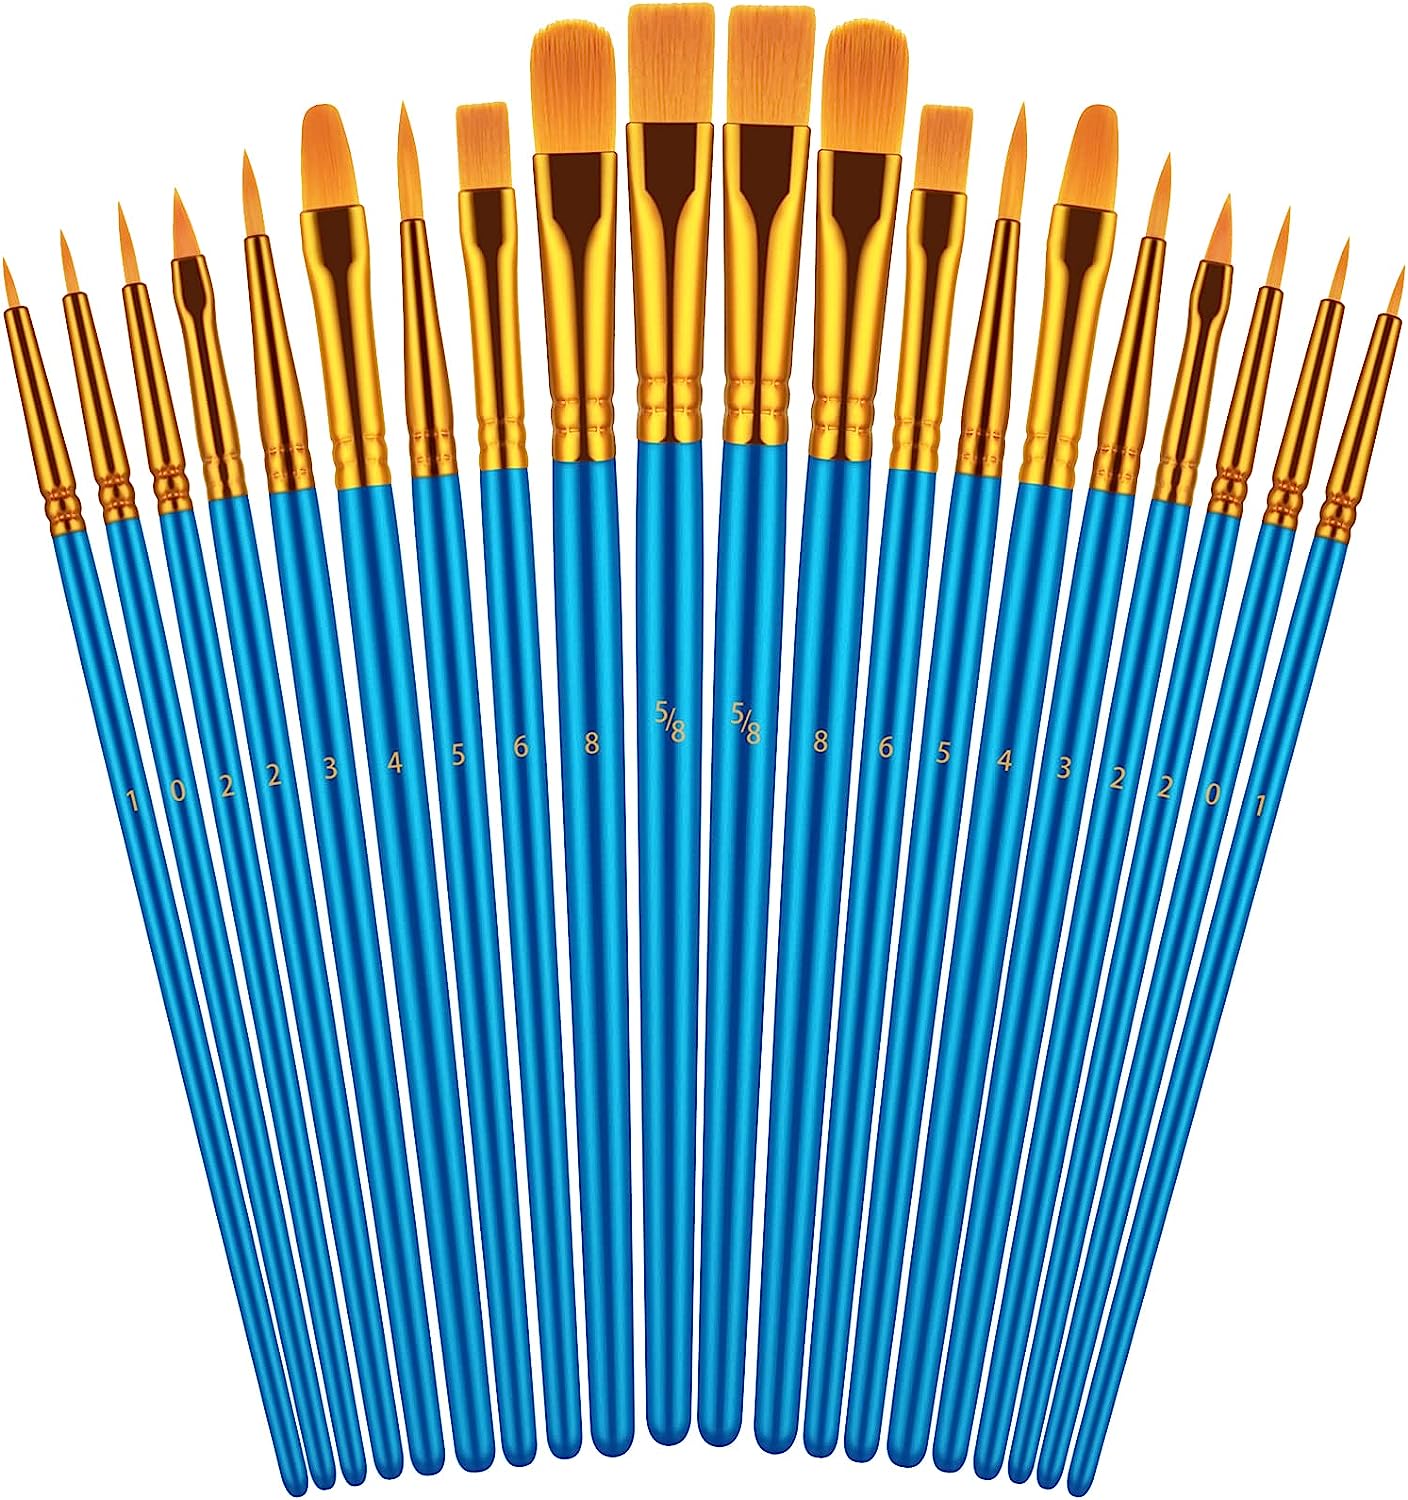 Paint Brushes Set, 20 Pcs Paint Brushes for Acrylic [...]